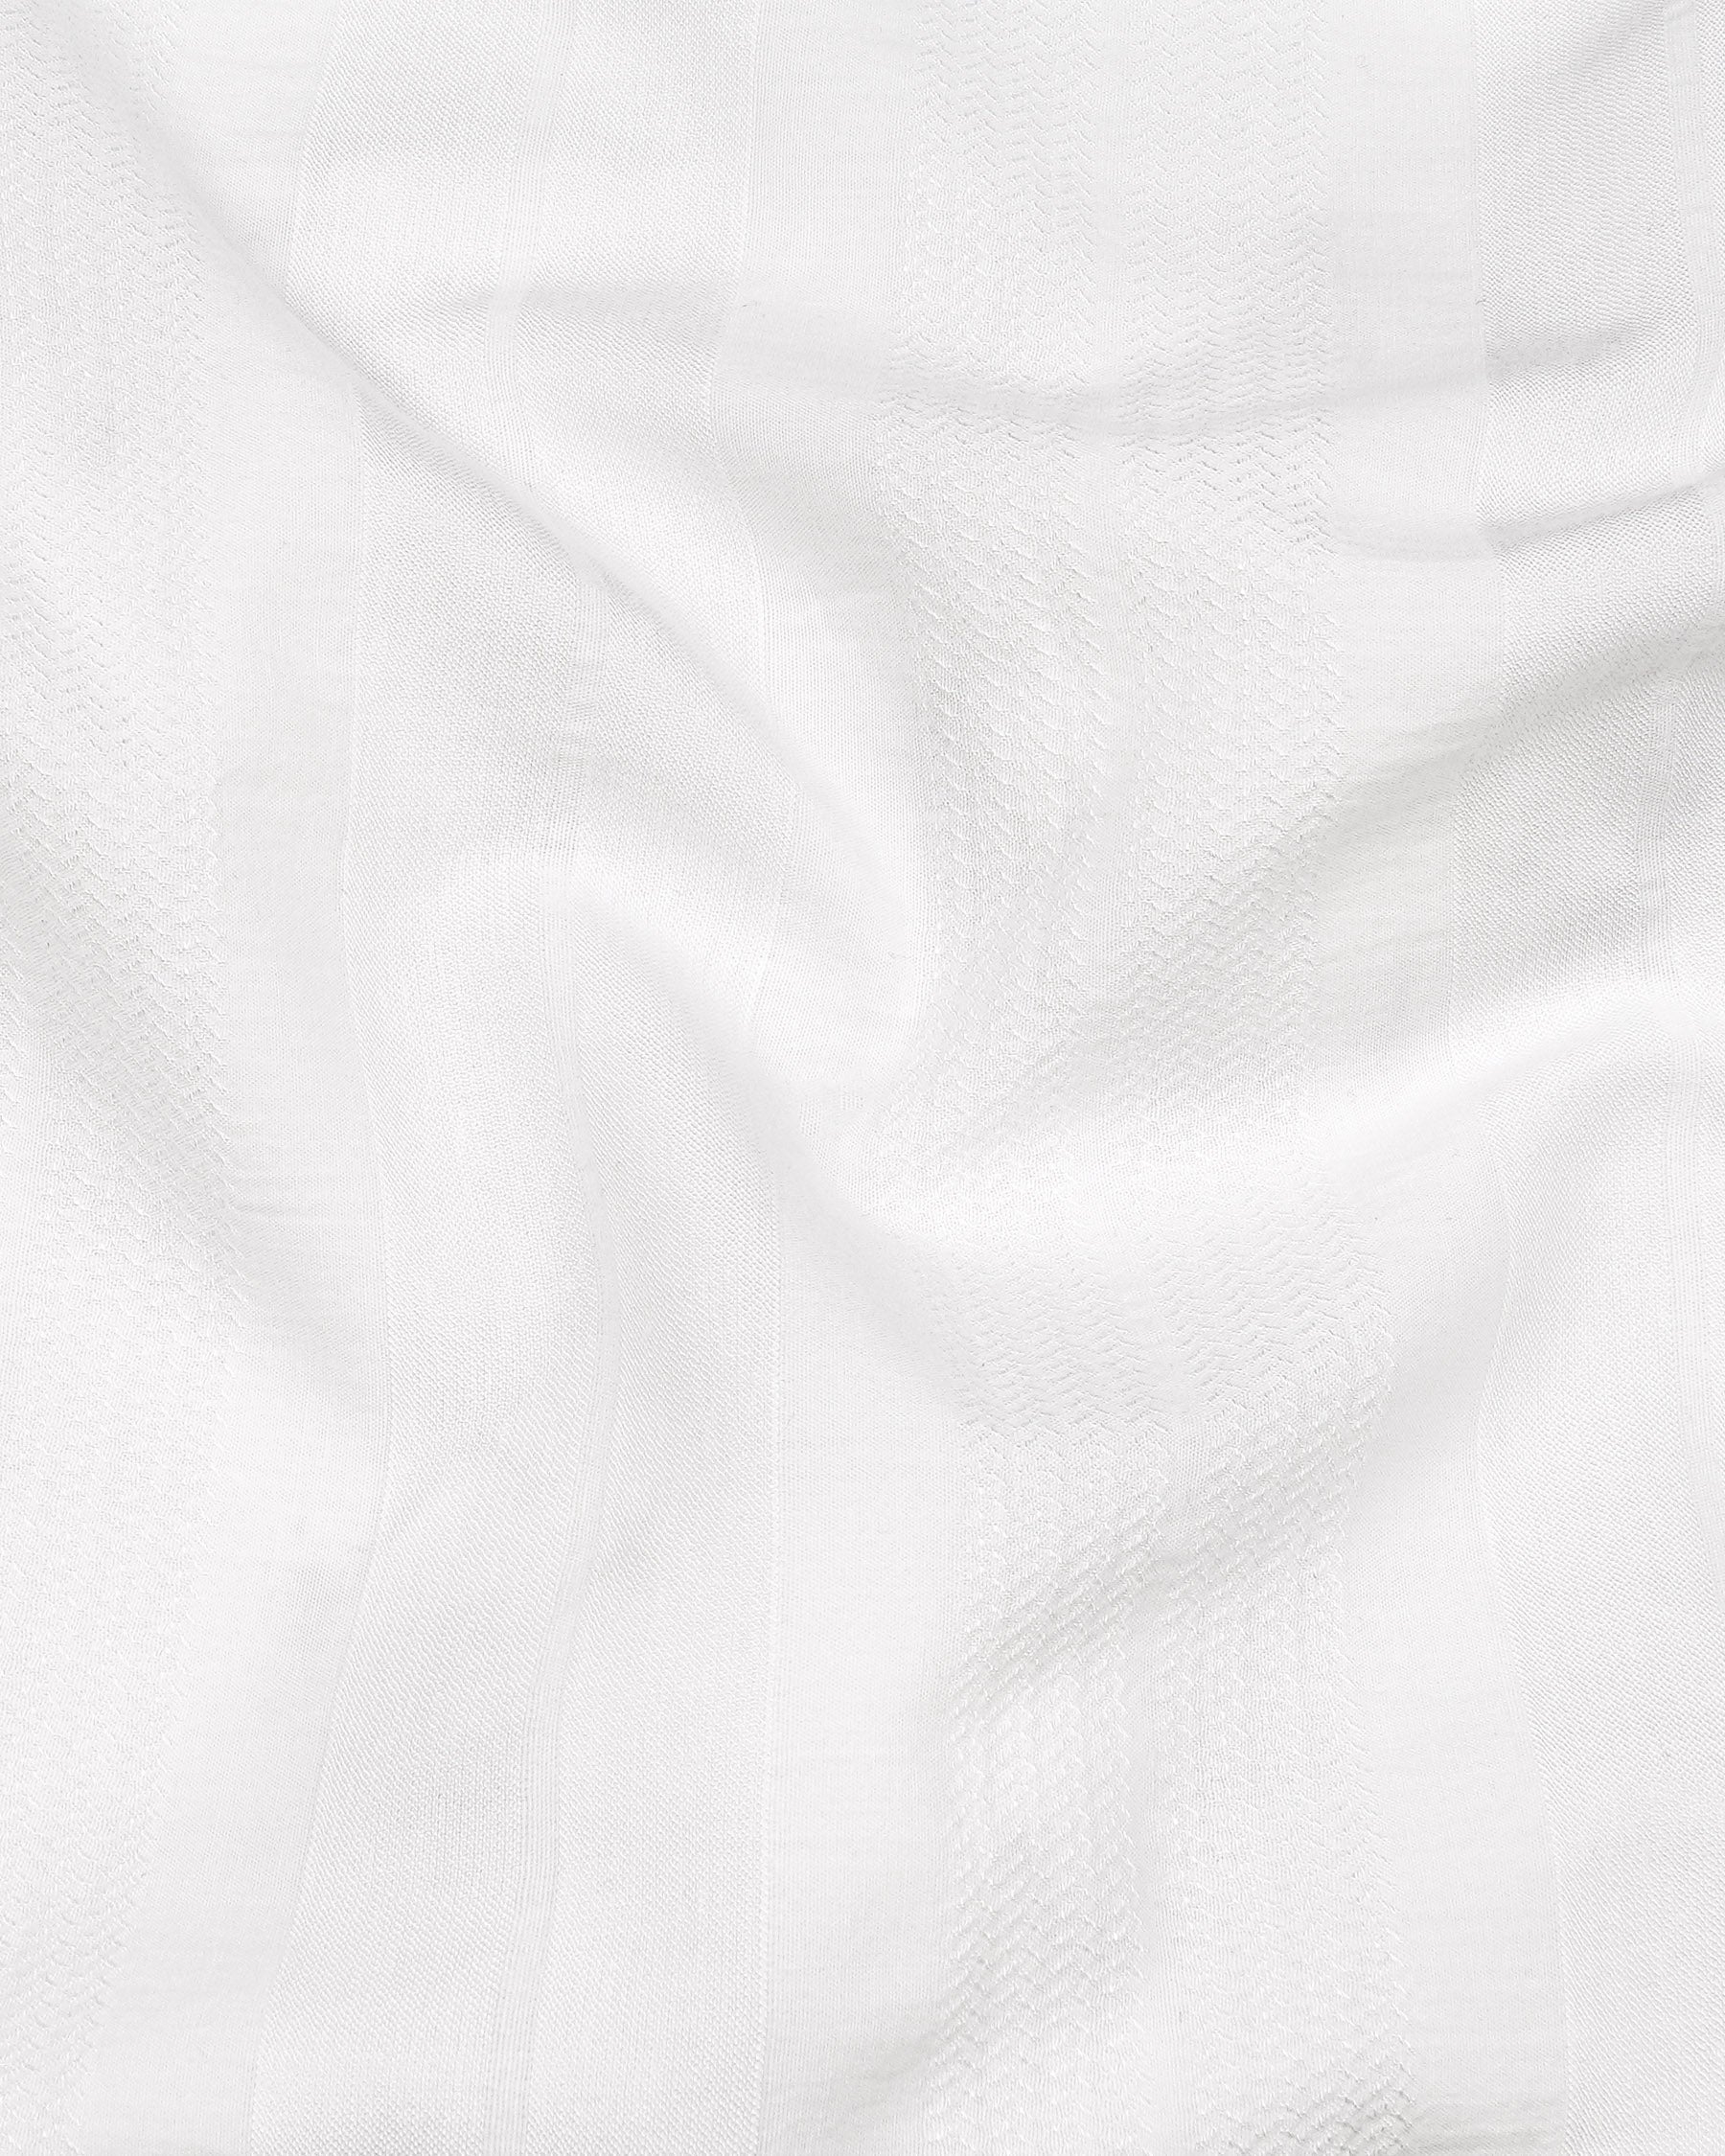 Bright White Dobby Textured Premium Giza Cotton Shirt 7895-BD-BLK -38,7895-BD-BLK -H-38,7895-BD-BLK -39,7895-BD-BLK -H-39,7895-BD-BLK -40,7895-BD-BLK -H-40,7895-BD-BLK -42,7895-BD-BLK -H-42,7895-BD-BLK -44,7895-BD-BLK -H-44,7895-BD-BLK -46,7895-BD-BLK -H-46,7895-BD-BLK -48,7895-BD-BLK -H-48,7895-BD-BLK -50,7895-BD-BLK -H-50,7895-BD-BLK -52,7895-BD-BLK -H-52